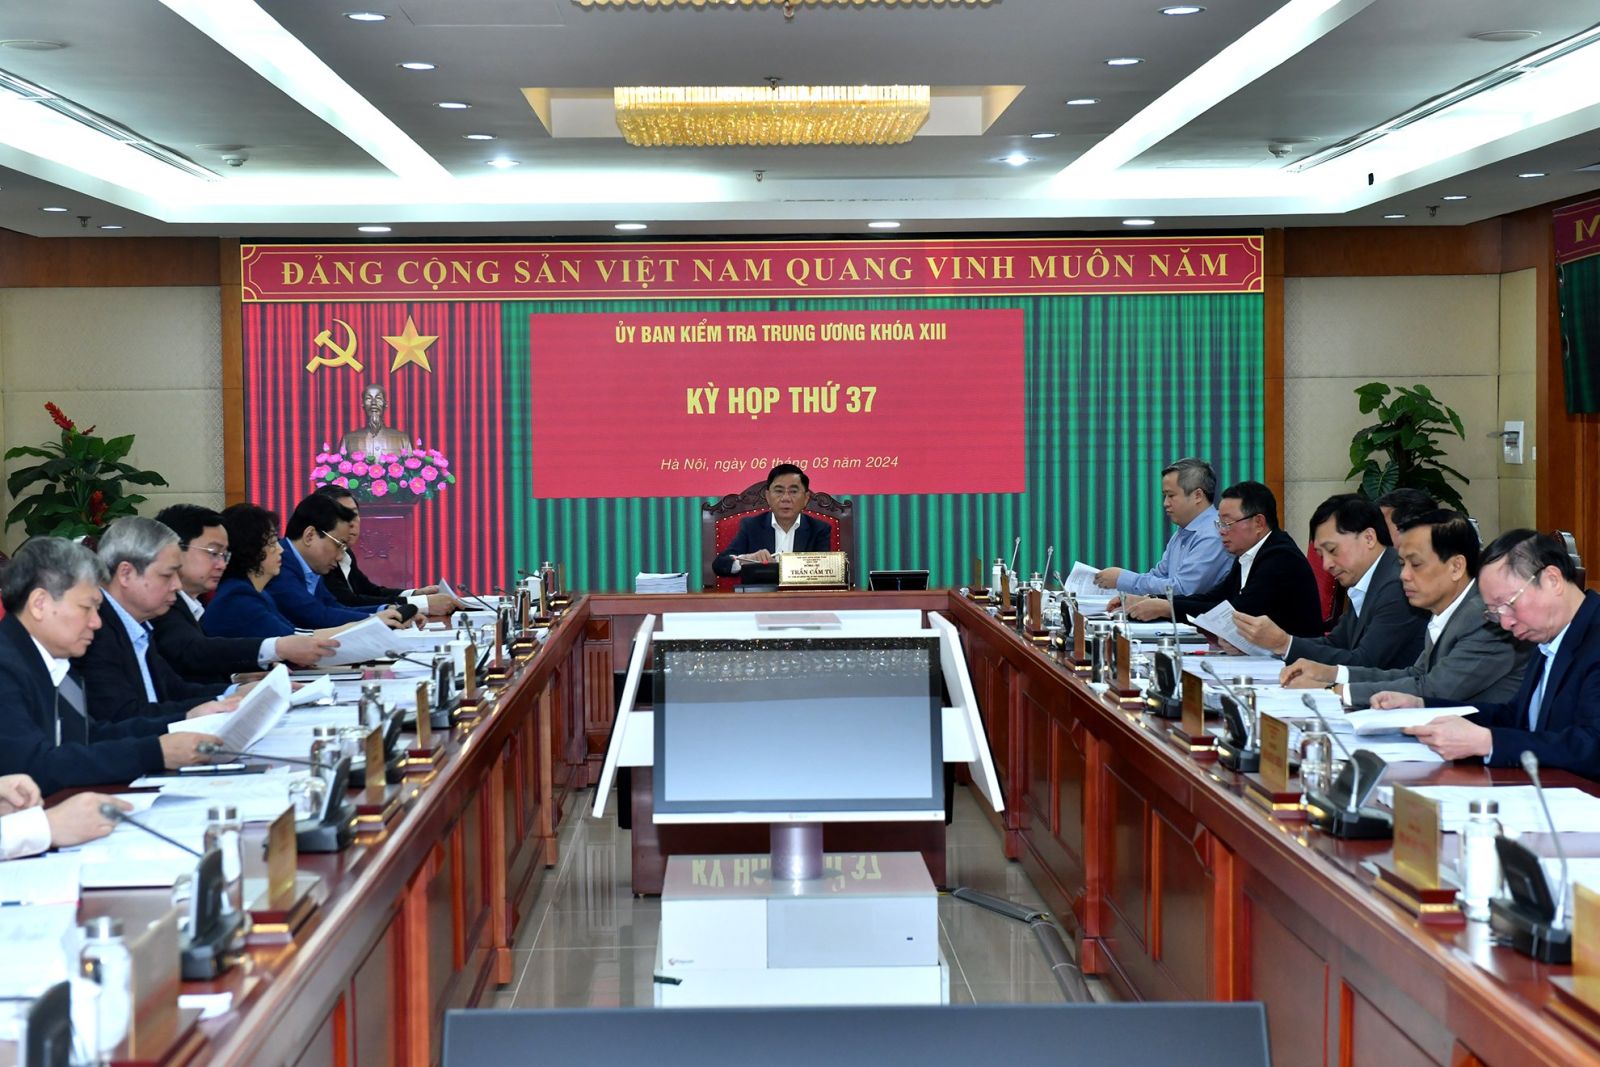 Ủy ban Kiểm tra Trung ương họp Kỳ thứ 37 tại Hà Nội từ ngày 06-08/3/2024